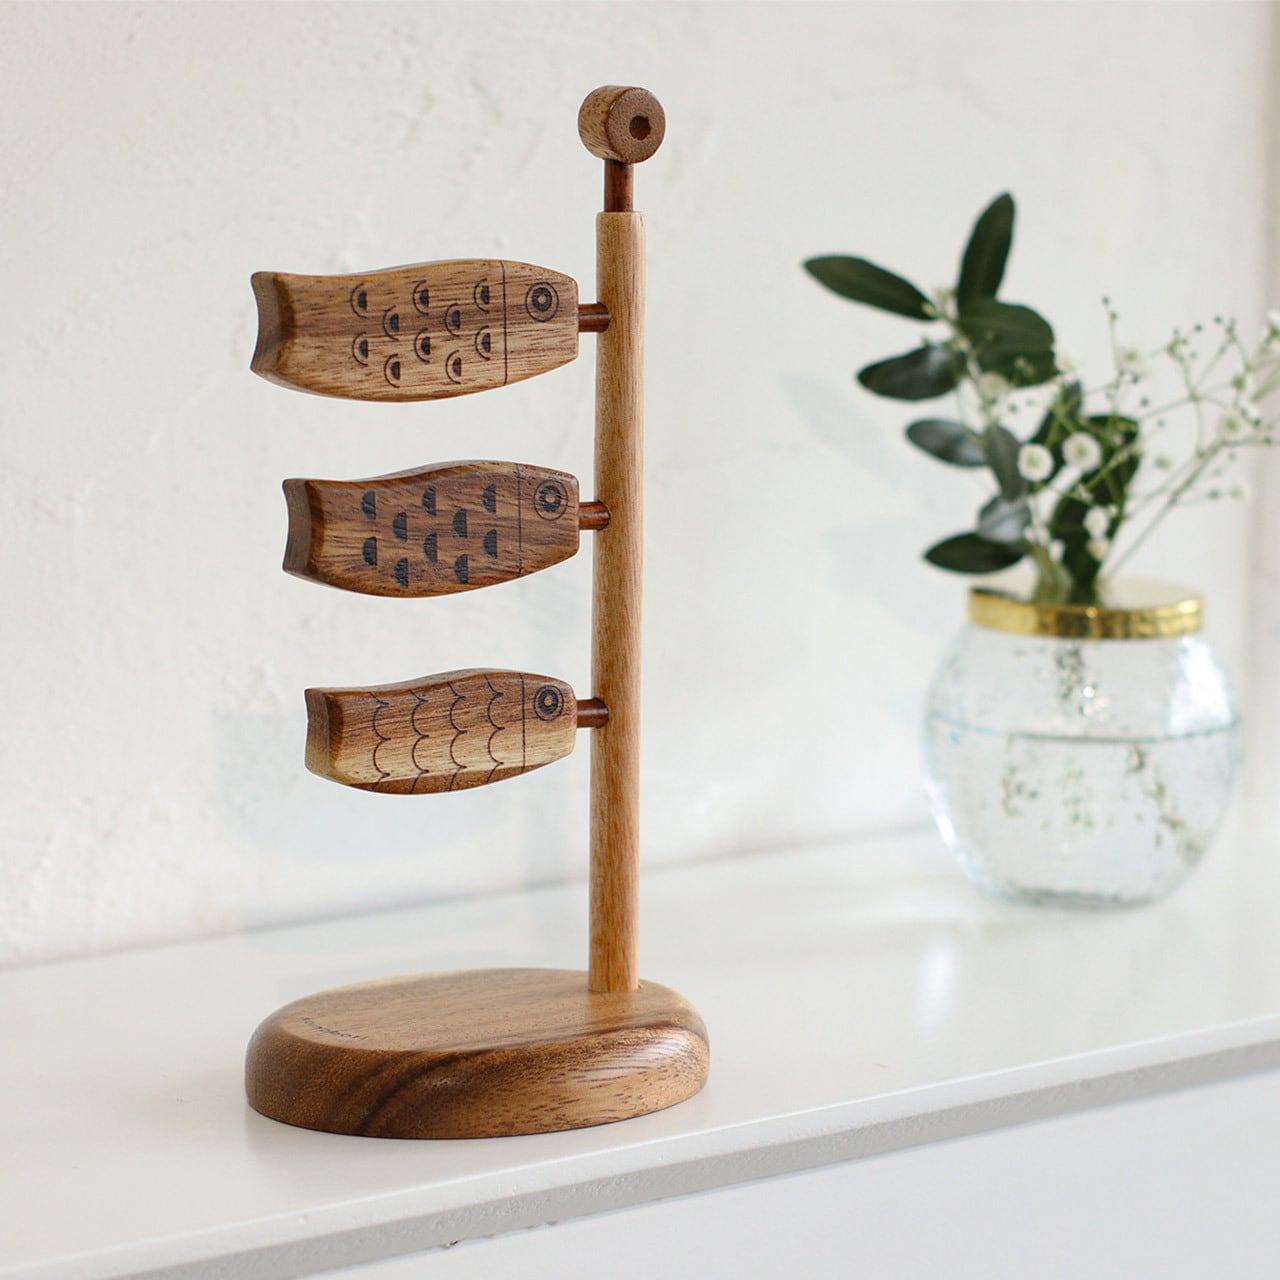 Koinobori wooden objects